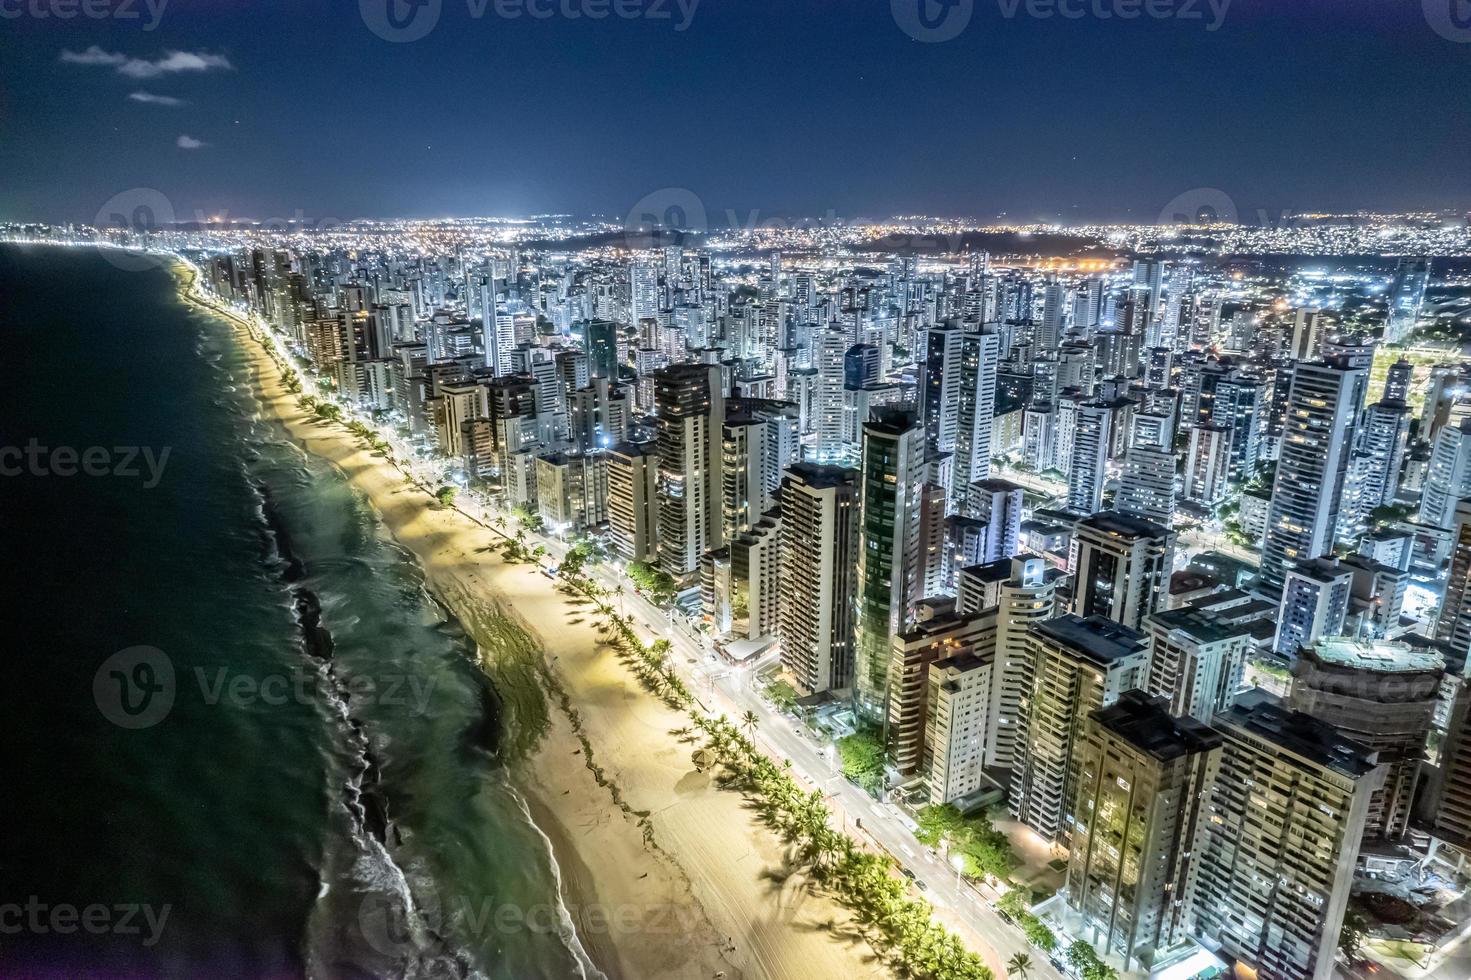 vista aérea da praia de boa viagem em recife, capital de pernambuco, brasil à noite. foto